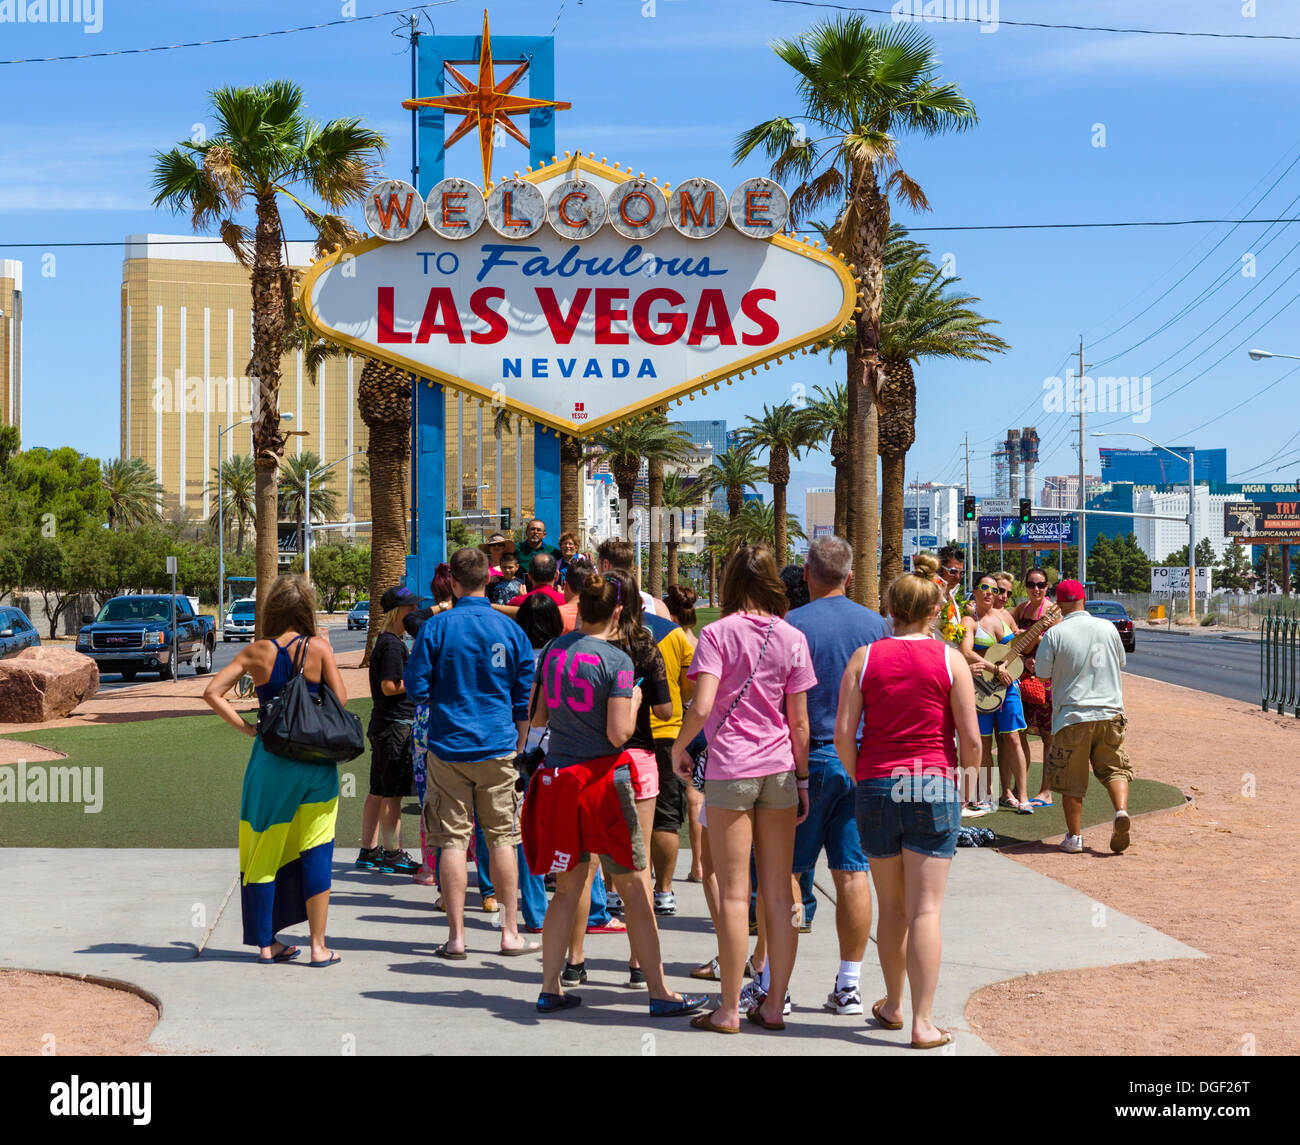 Les touristes la queue pour avoir une photo prise sous le panneau Welcome to Fabulous Las Vegas, Las Vegas, Nevada, USA Banque D'Images